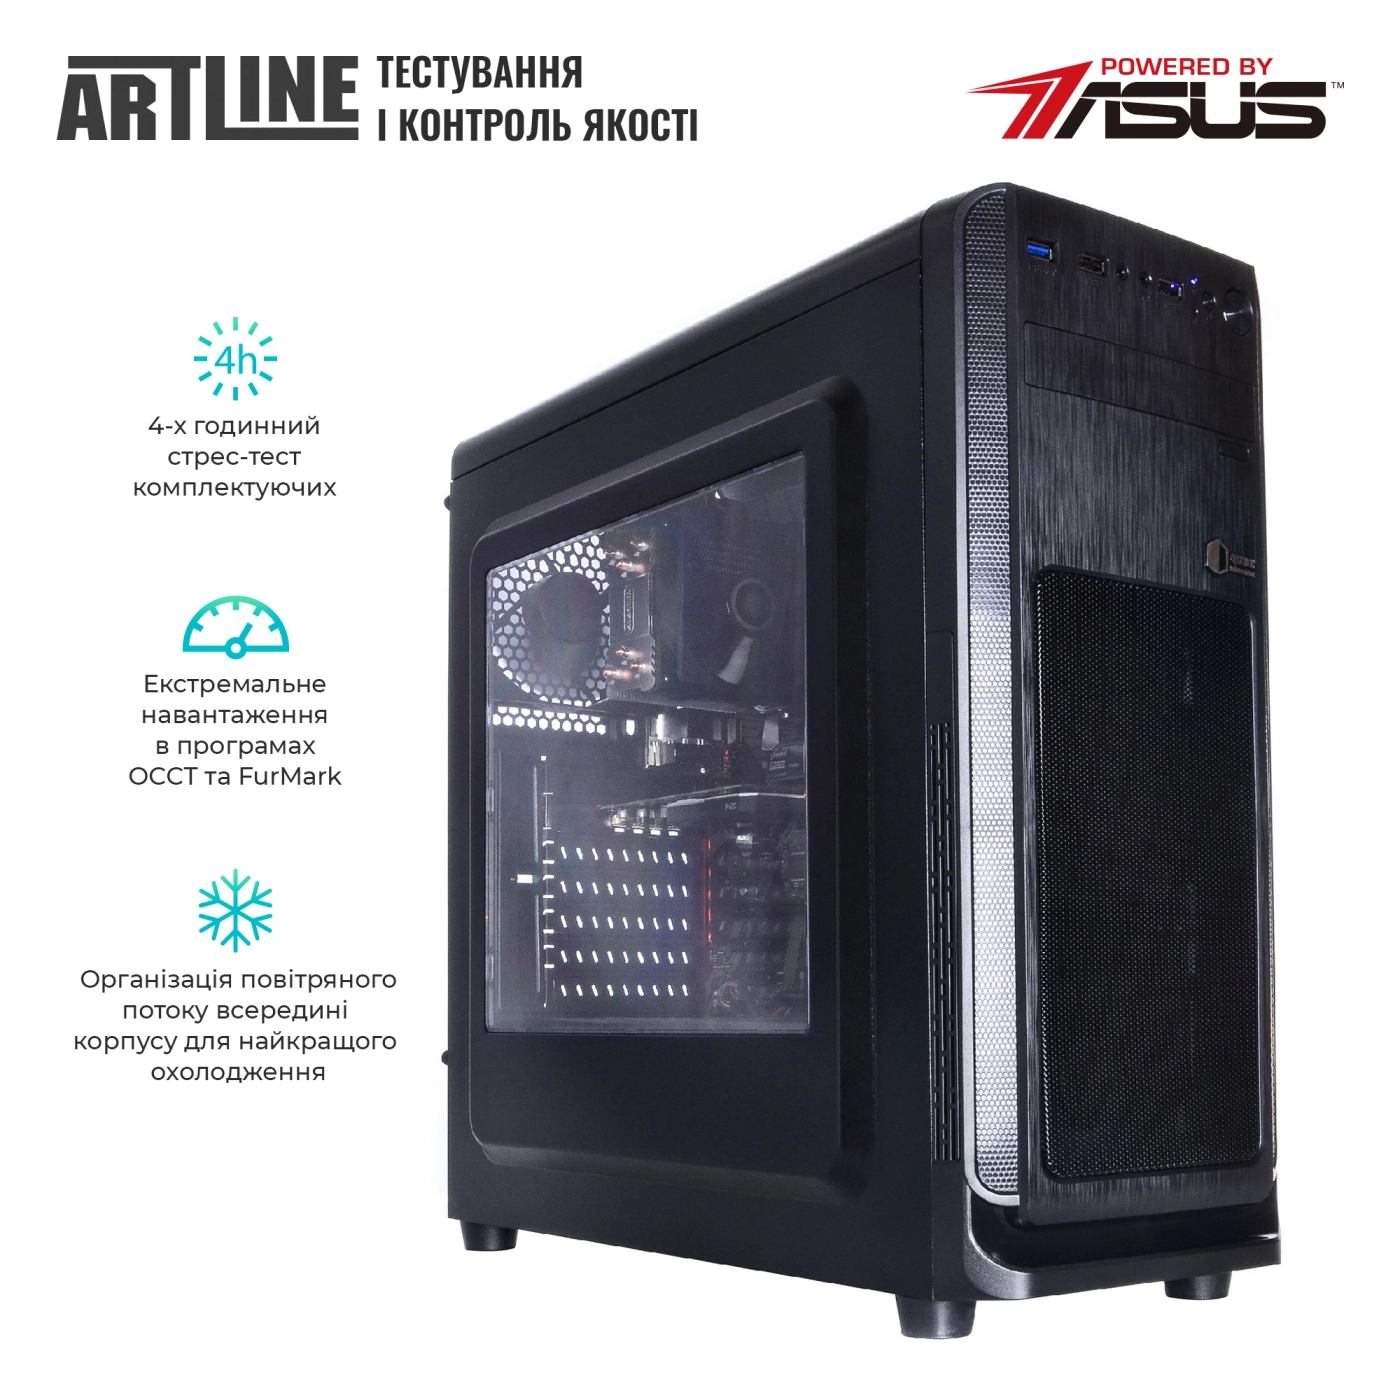 Купить Сервер ARTLINE Business T63v08 - фото 6